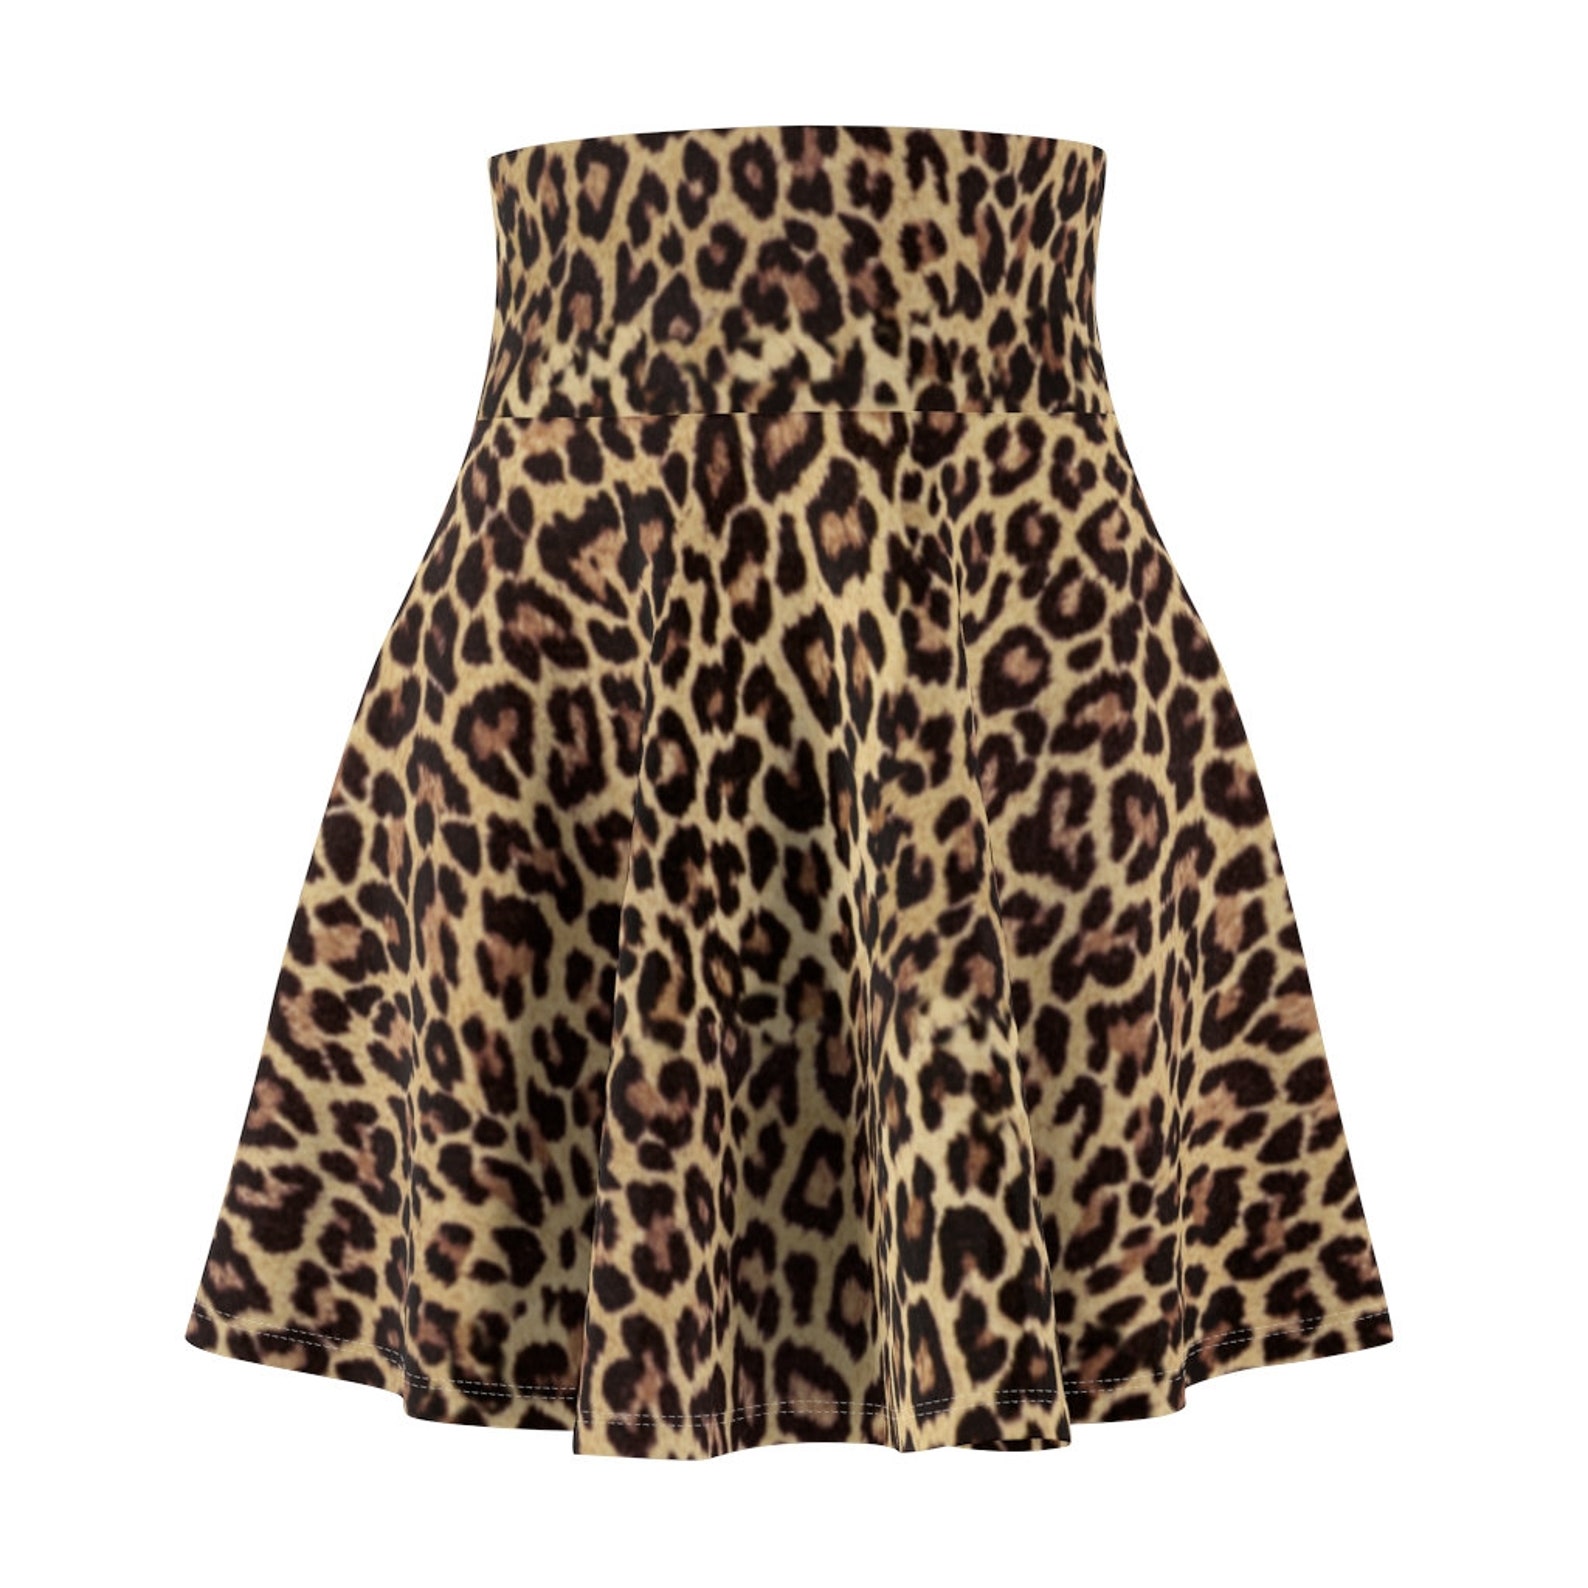 Leopard Print Skirt Tennis Skirt Animal Print Skirt A Line | Etsy